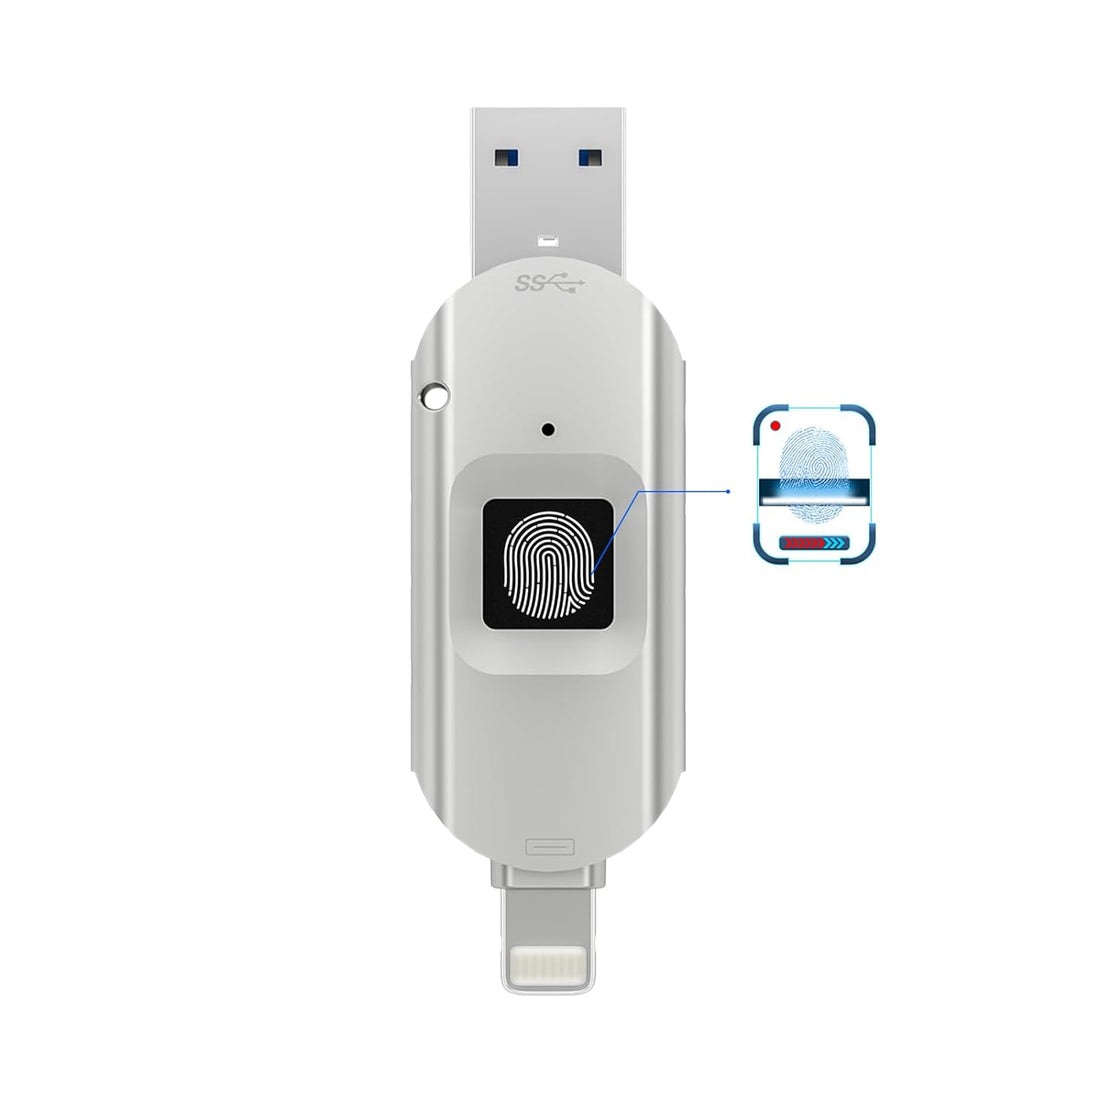 USB Flash Drive 256GB,USB Storage Flash Drive,Encrypted USB Drive,External Storage,Fingerprint Encryption USB Flash Drive for iPhone/iPad/iPadmini/Mac/PC